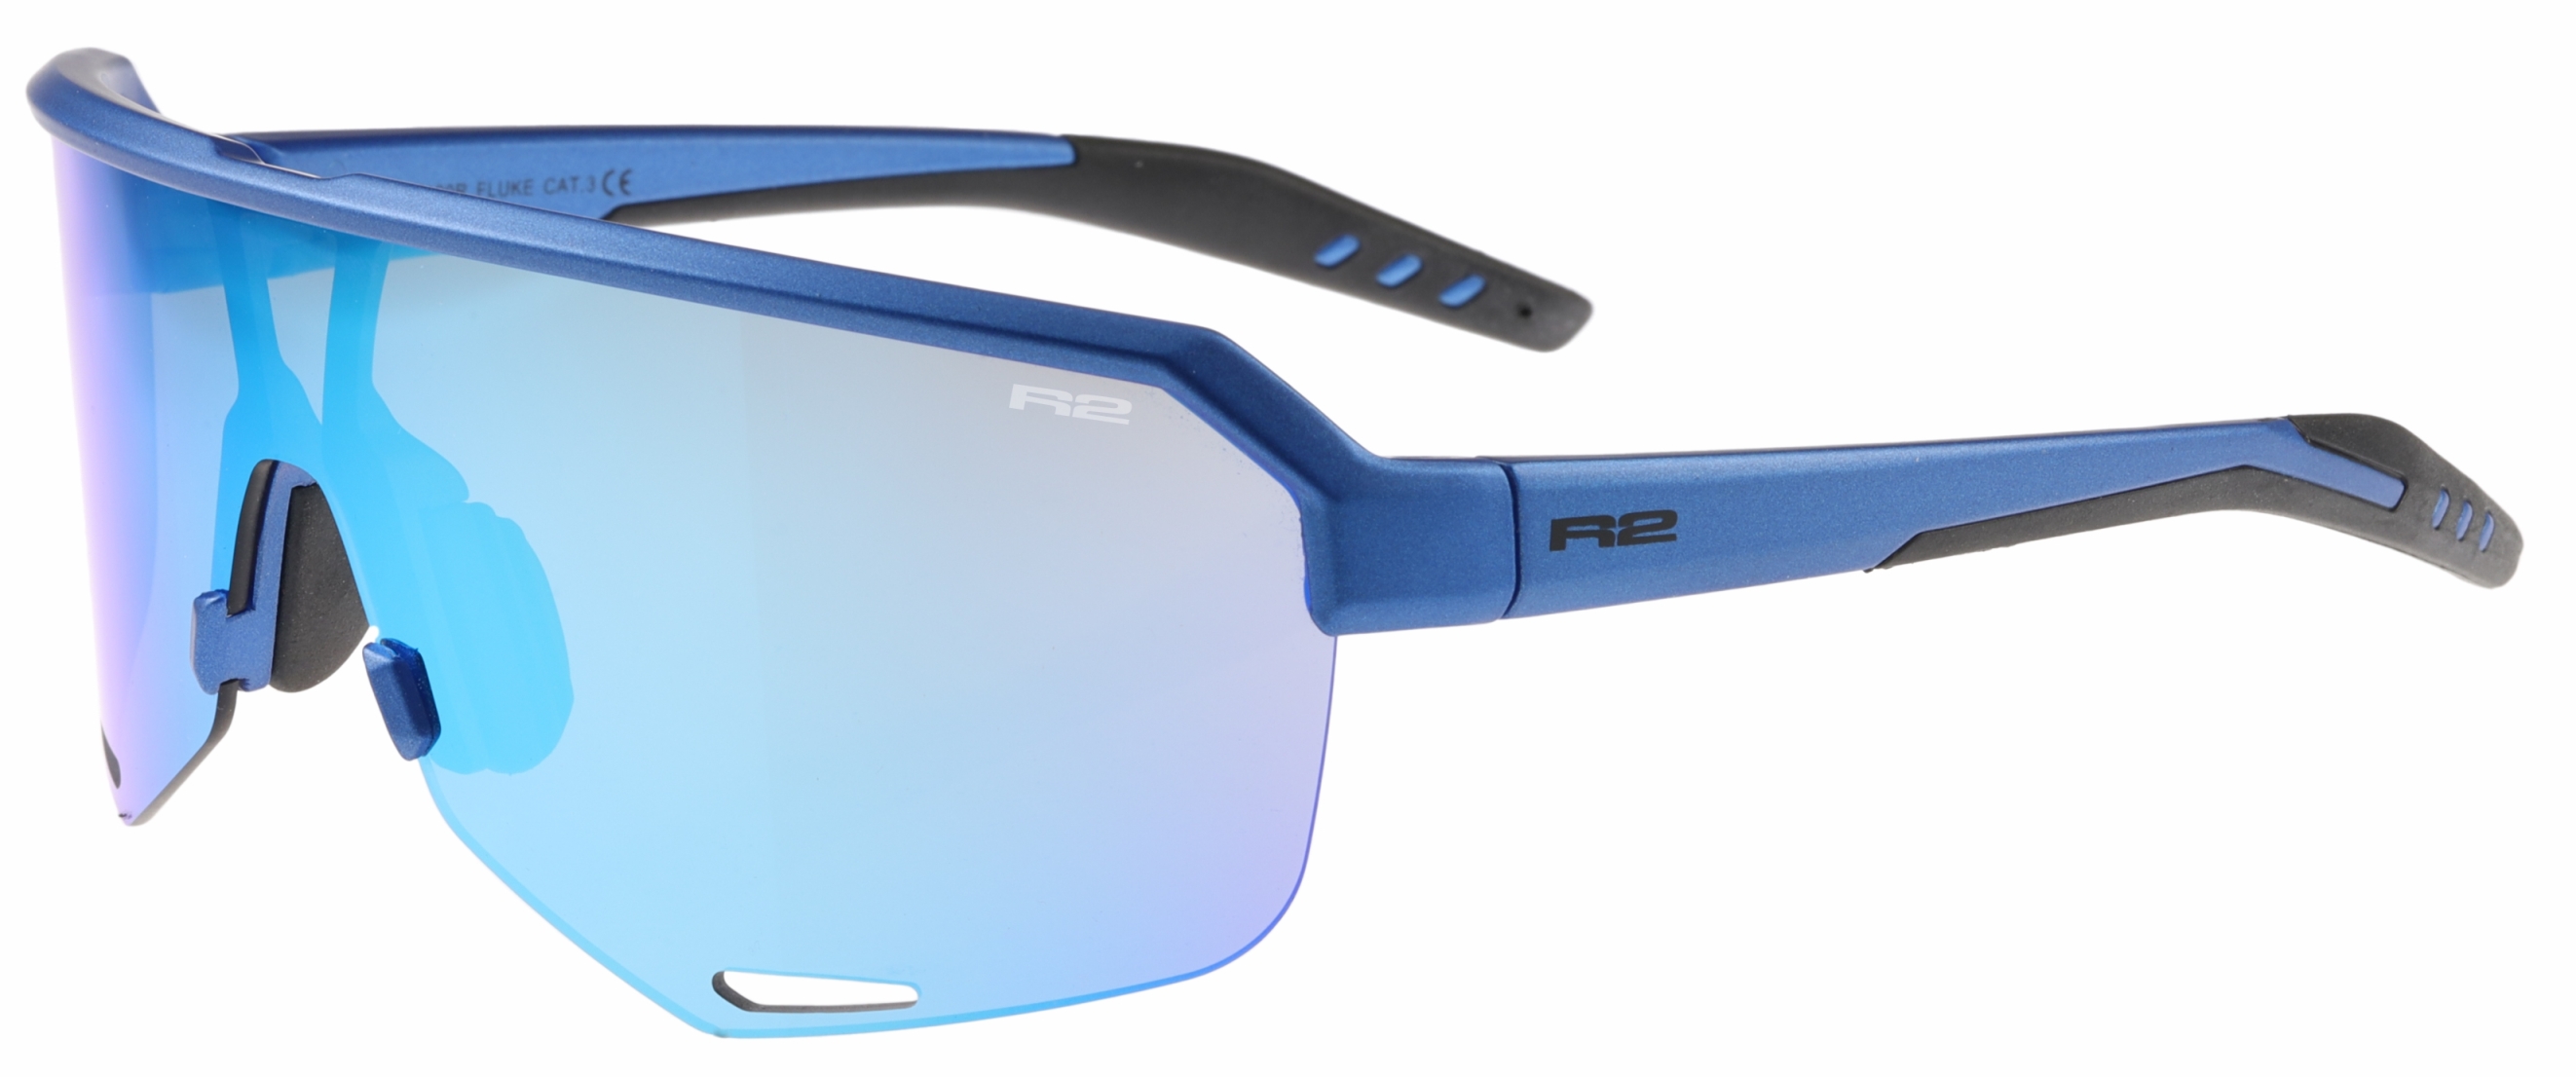 Sport sunglasses R2 FLUKE AT100R